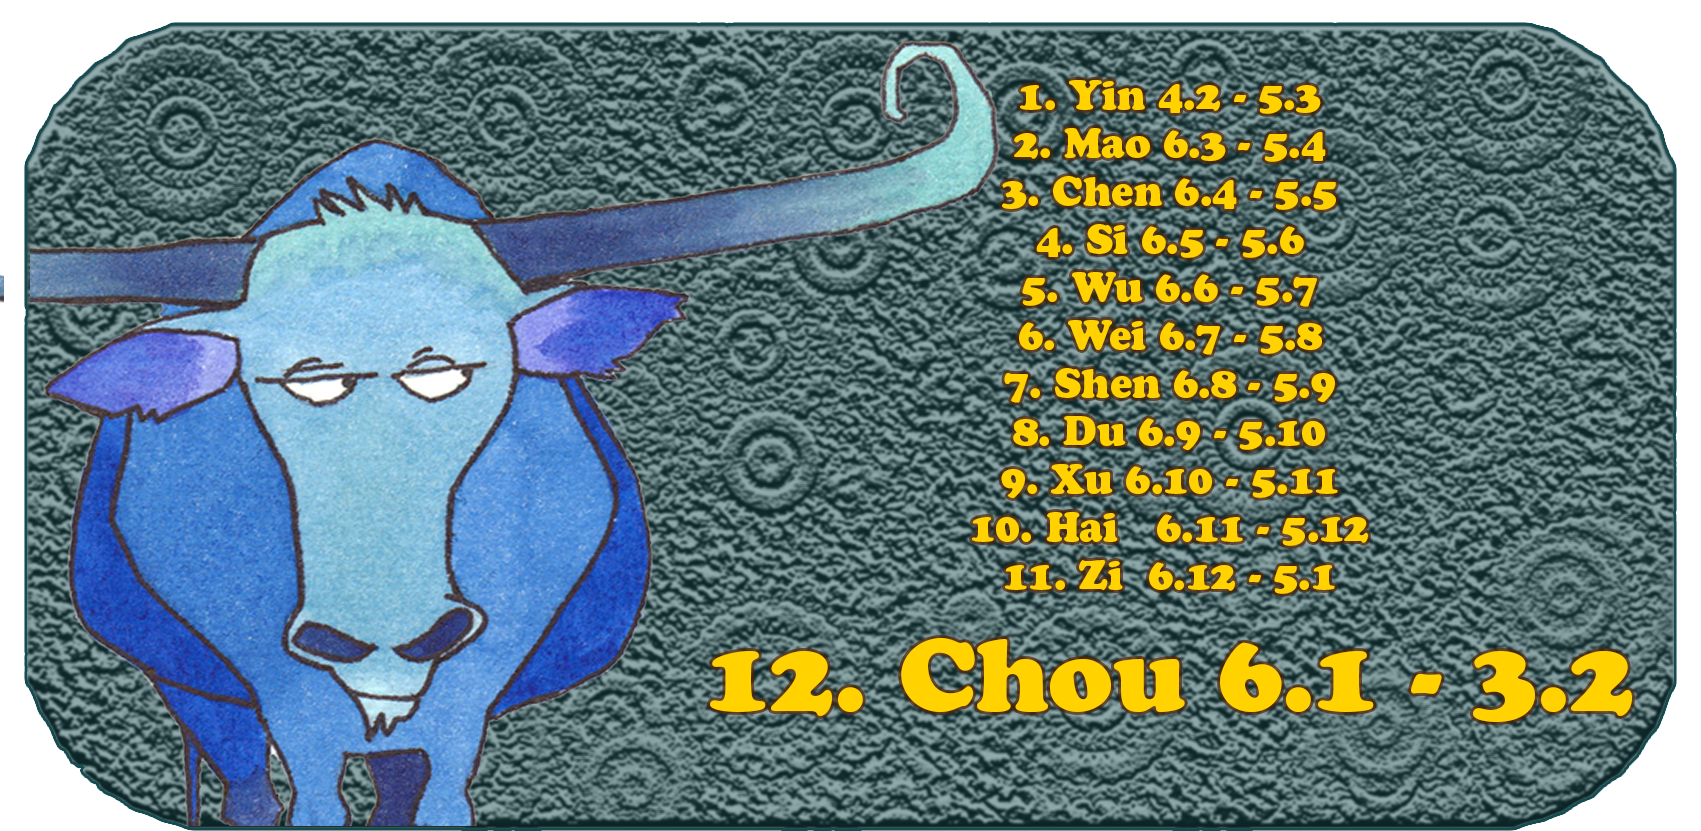 Zodíaco chino | Los doce animales chinos | Buey, enero, mes 12, Chou